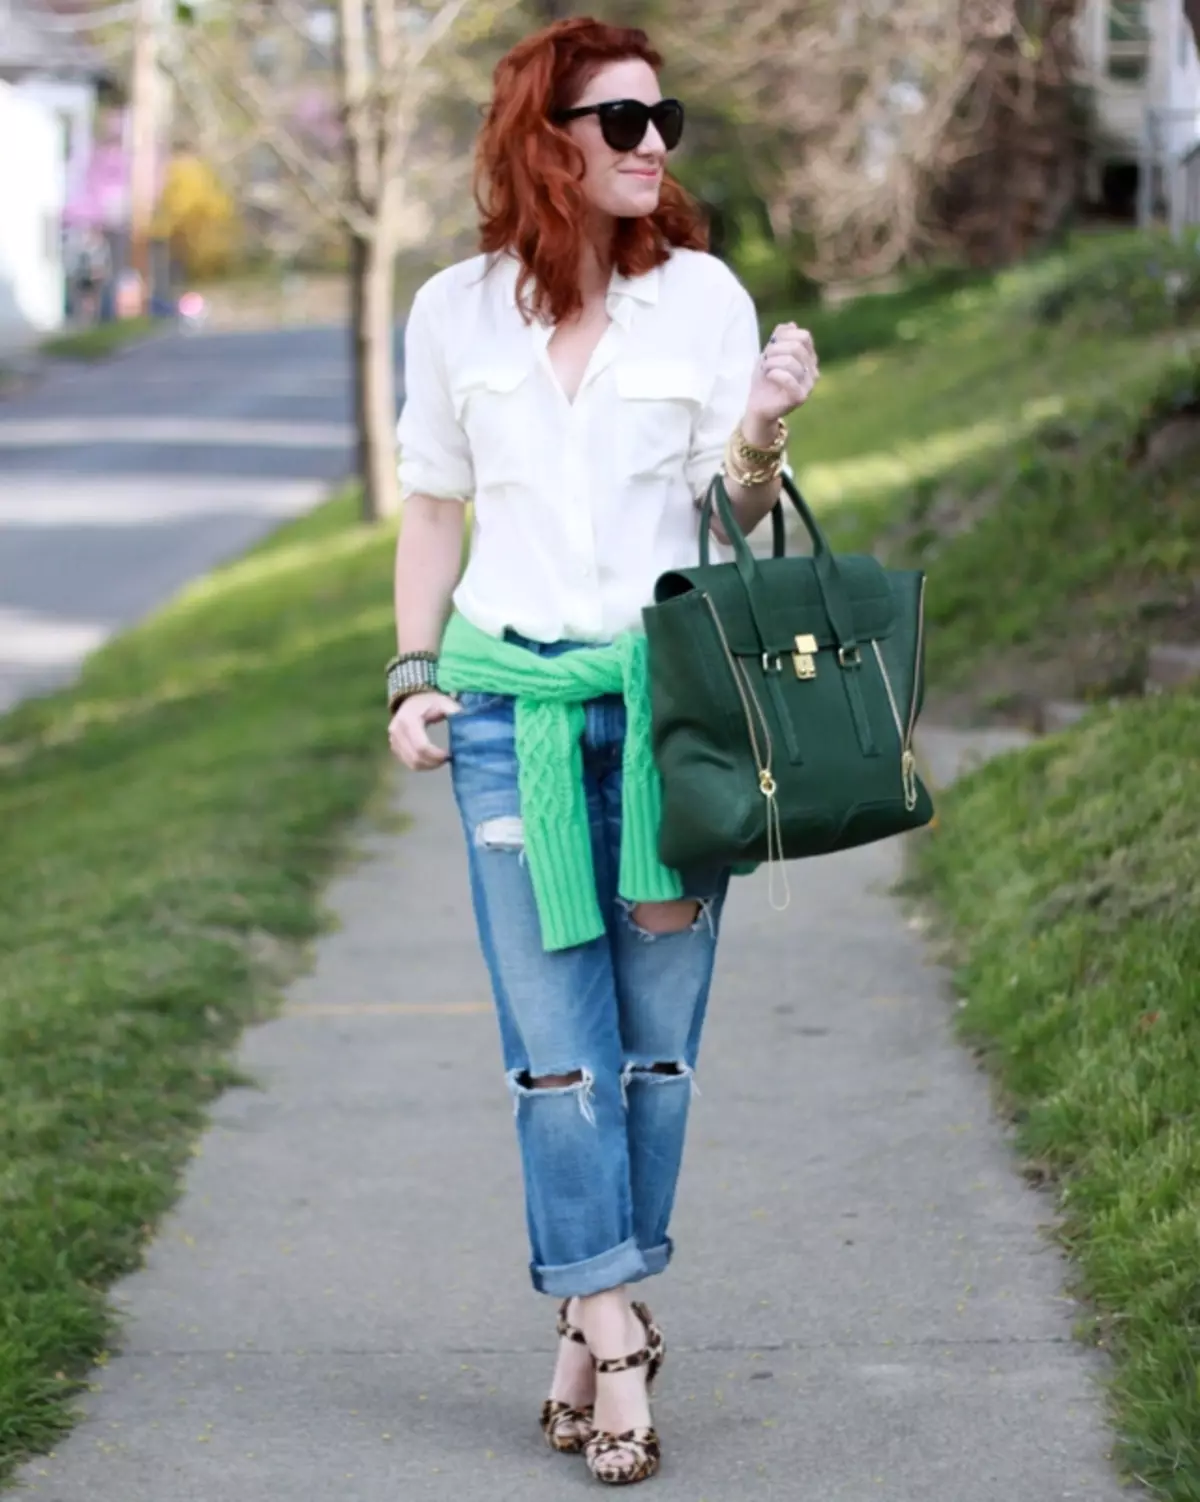 گرین بیگ (70 تصاویر): روشنی اور سیاہ سبز چمڑے کے ماڈل پہننے کے لئے، چھوٹے اور کندھے کے ذریعے 2816_44